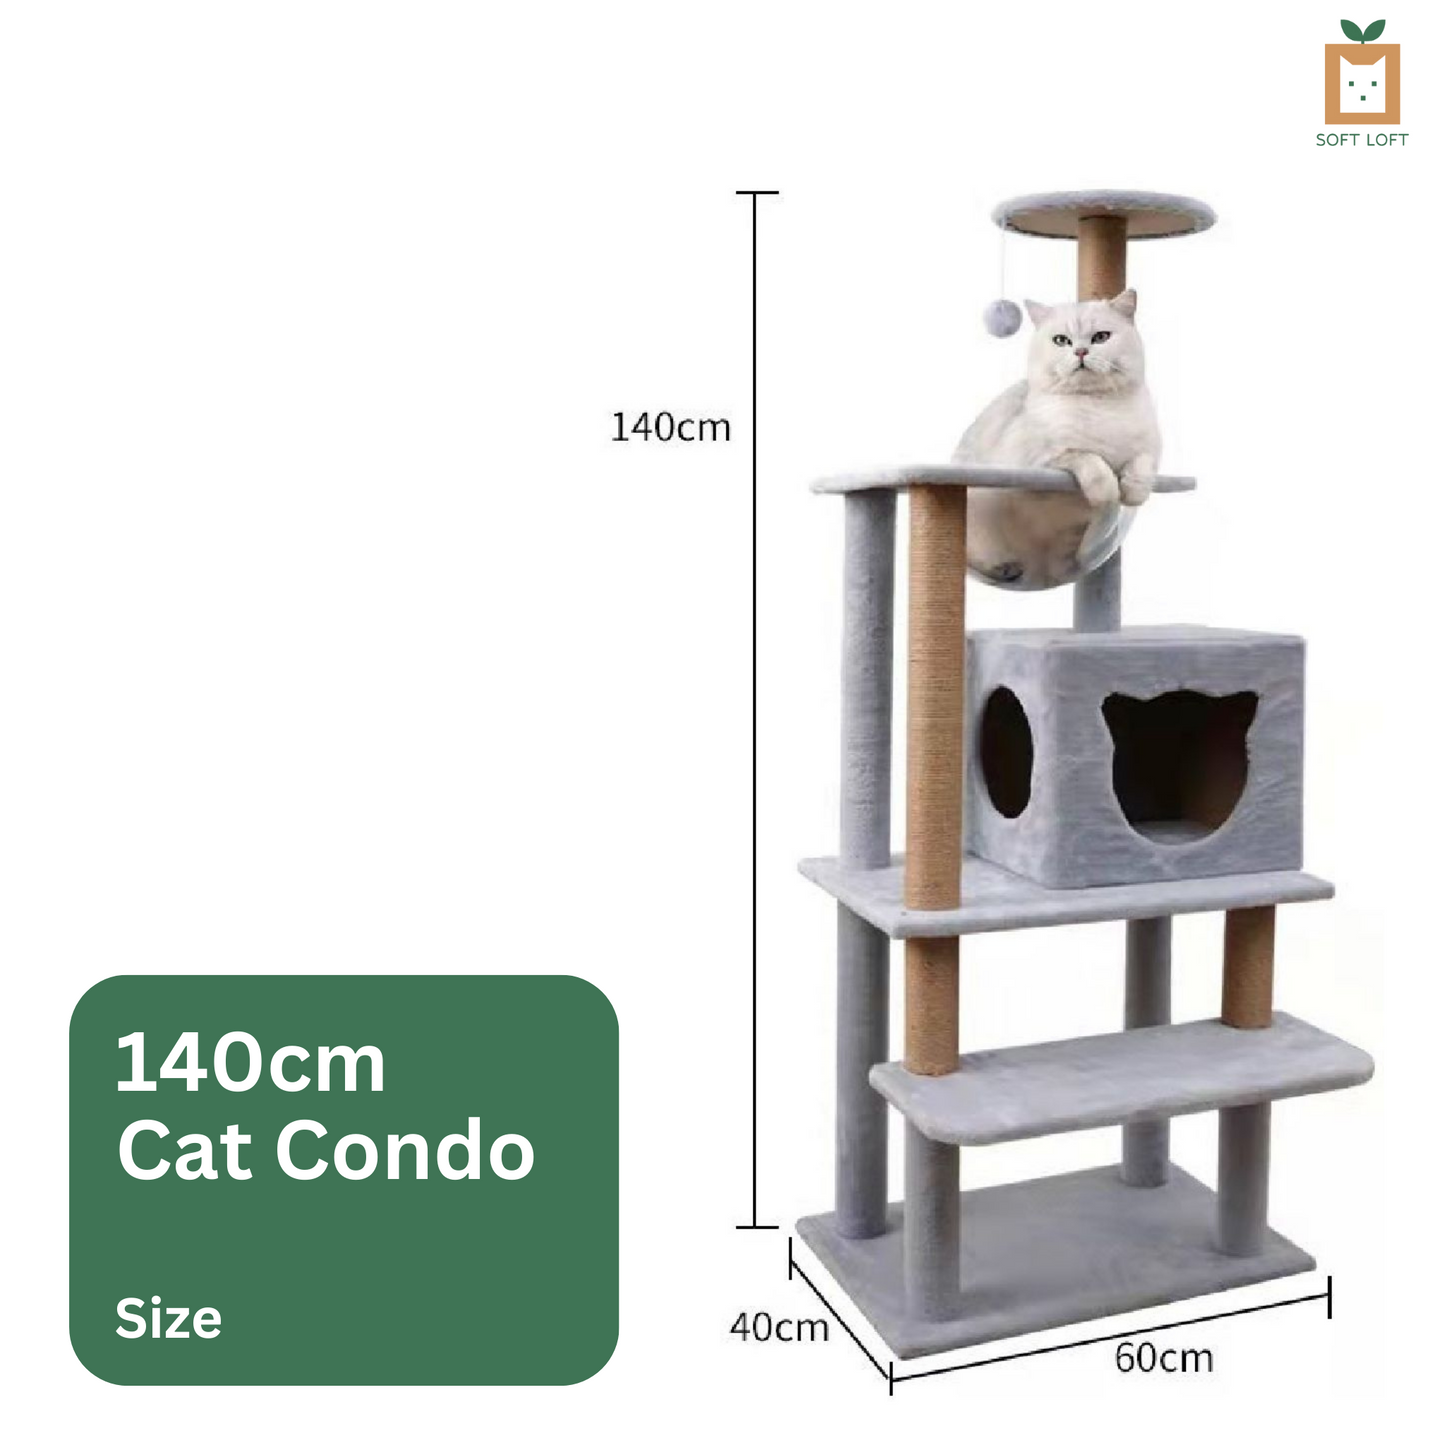 Plush Cat Condo (140cm)